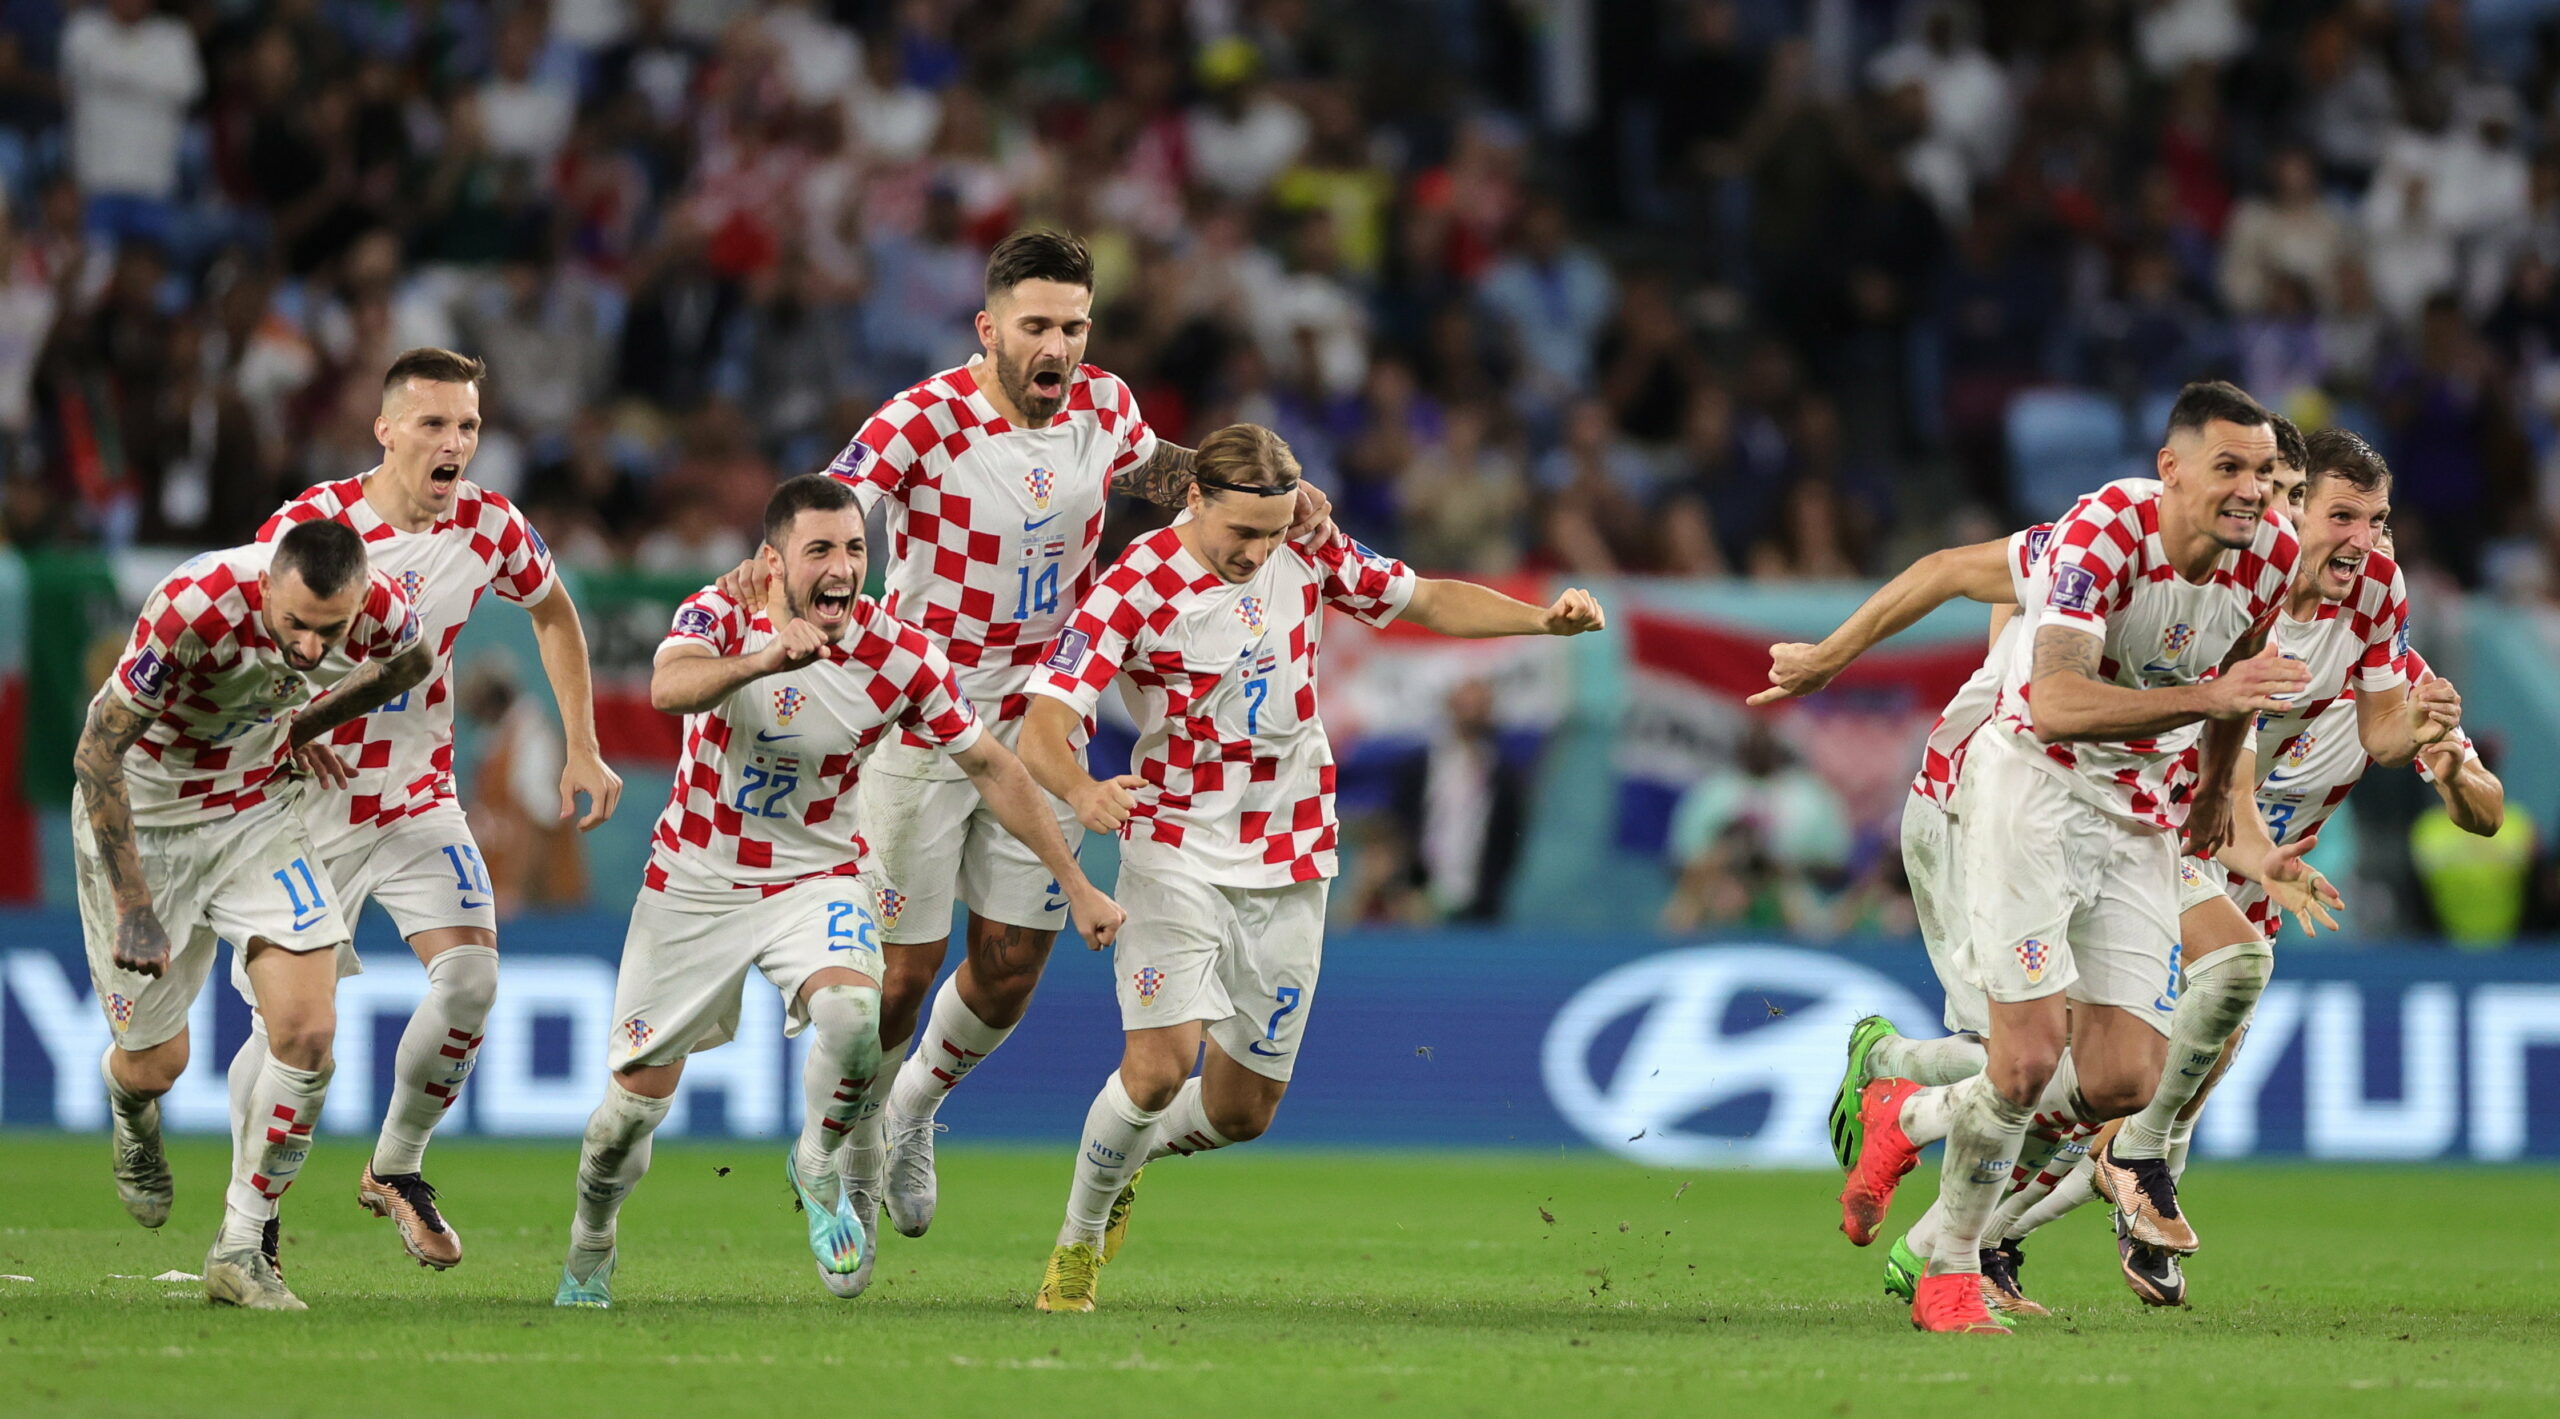 Drámai végjáték után jutott a foci-vb negyeddöntőjébe Horvátország